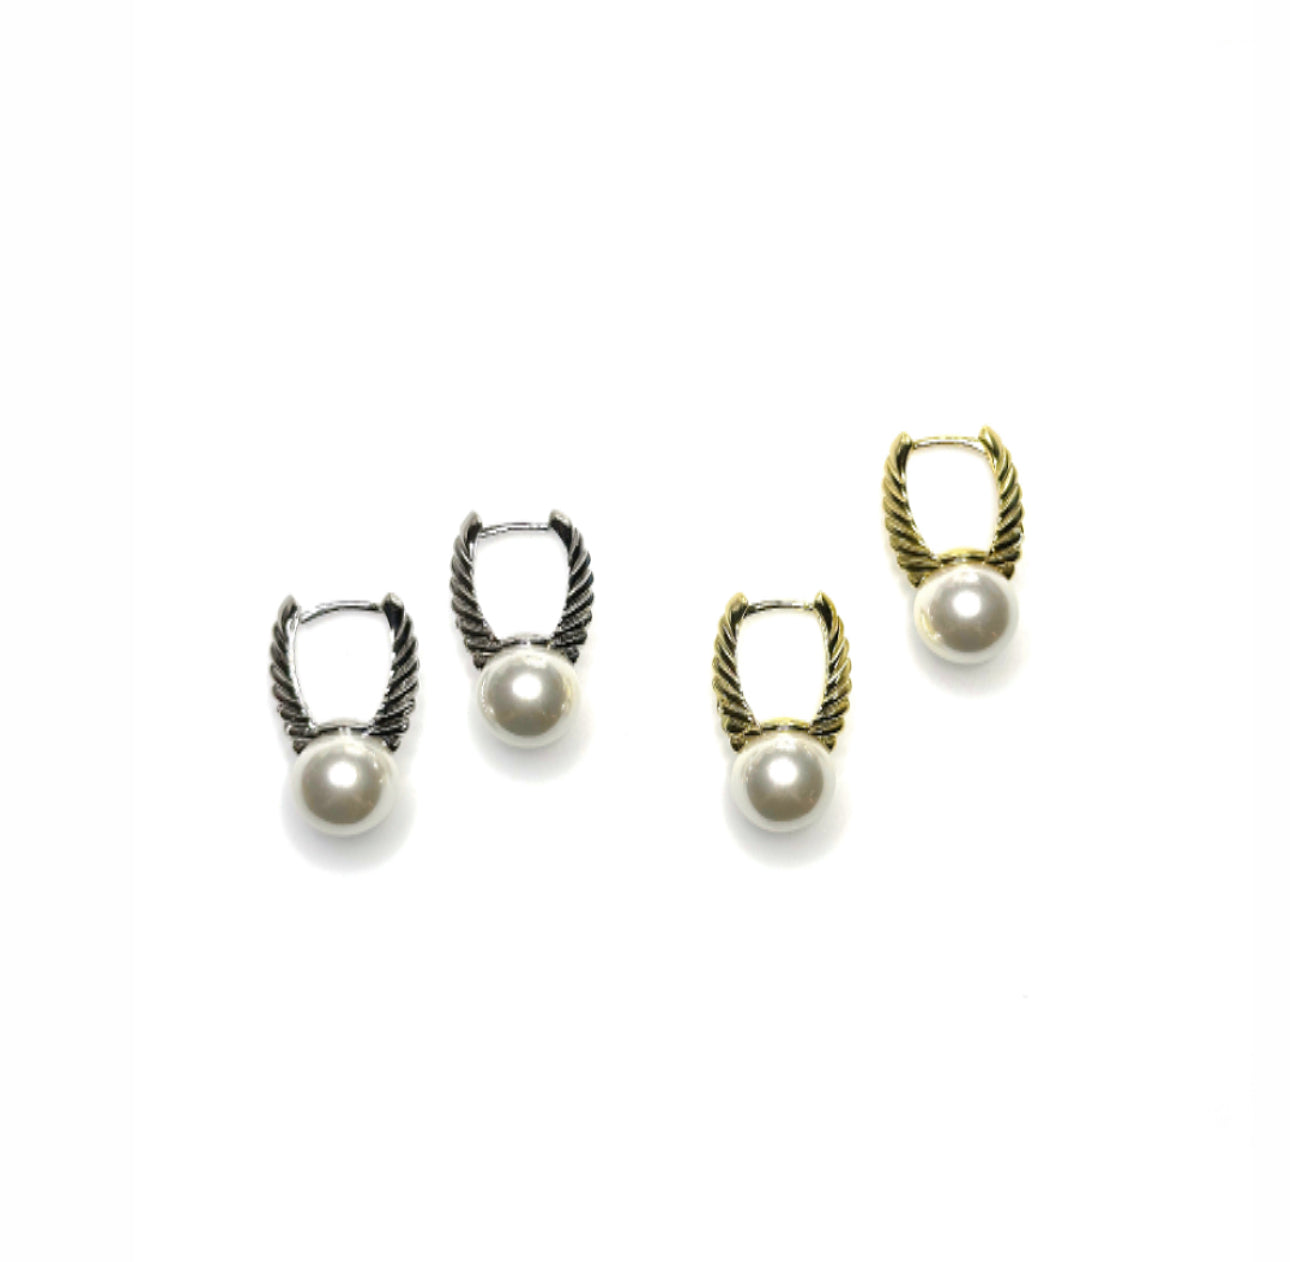 Winged pearl earrings